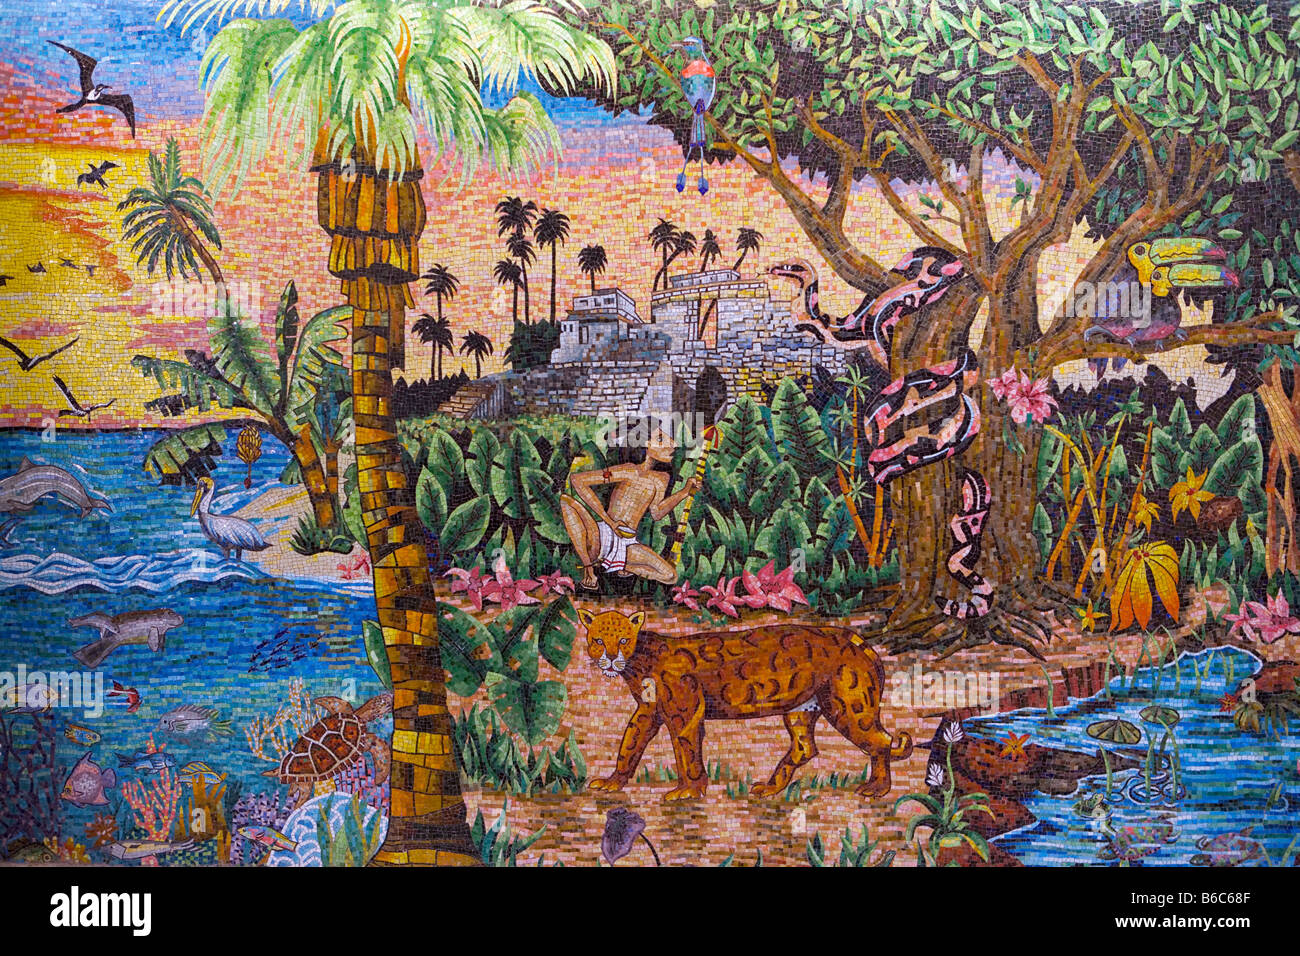 Mexiko, Quintana Roo, Tulum, Naturpark Xcaret. Mosaik, Vertretung der Maya-Geschichte und Tierwelt von Yucatan. Stockfoto